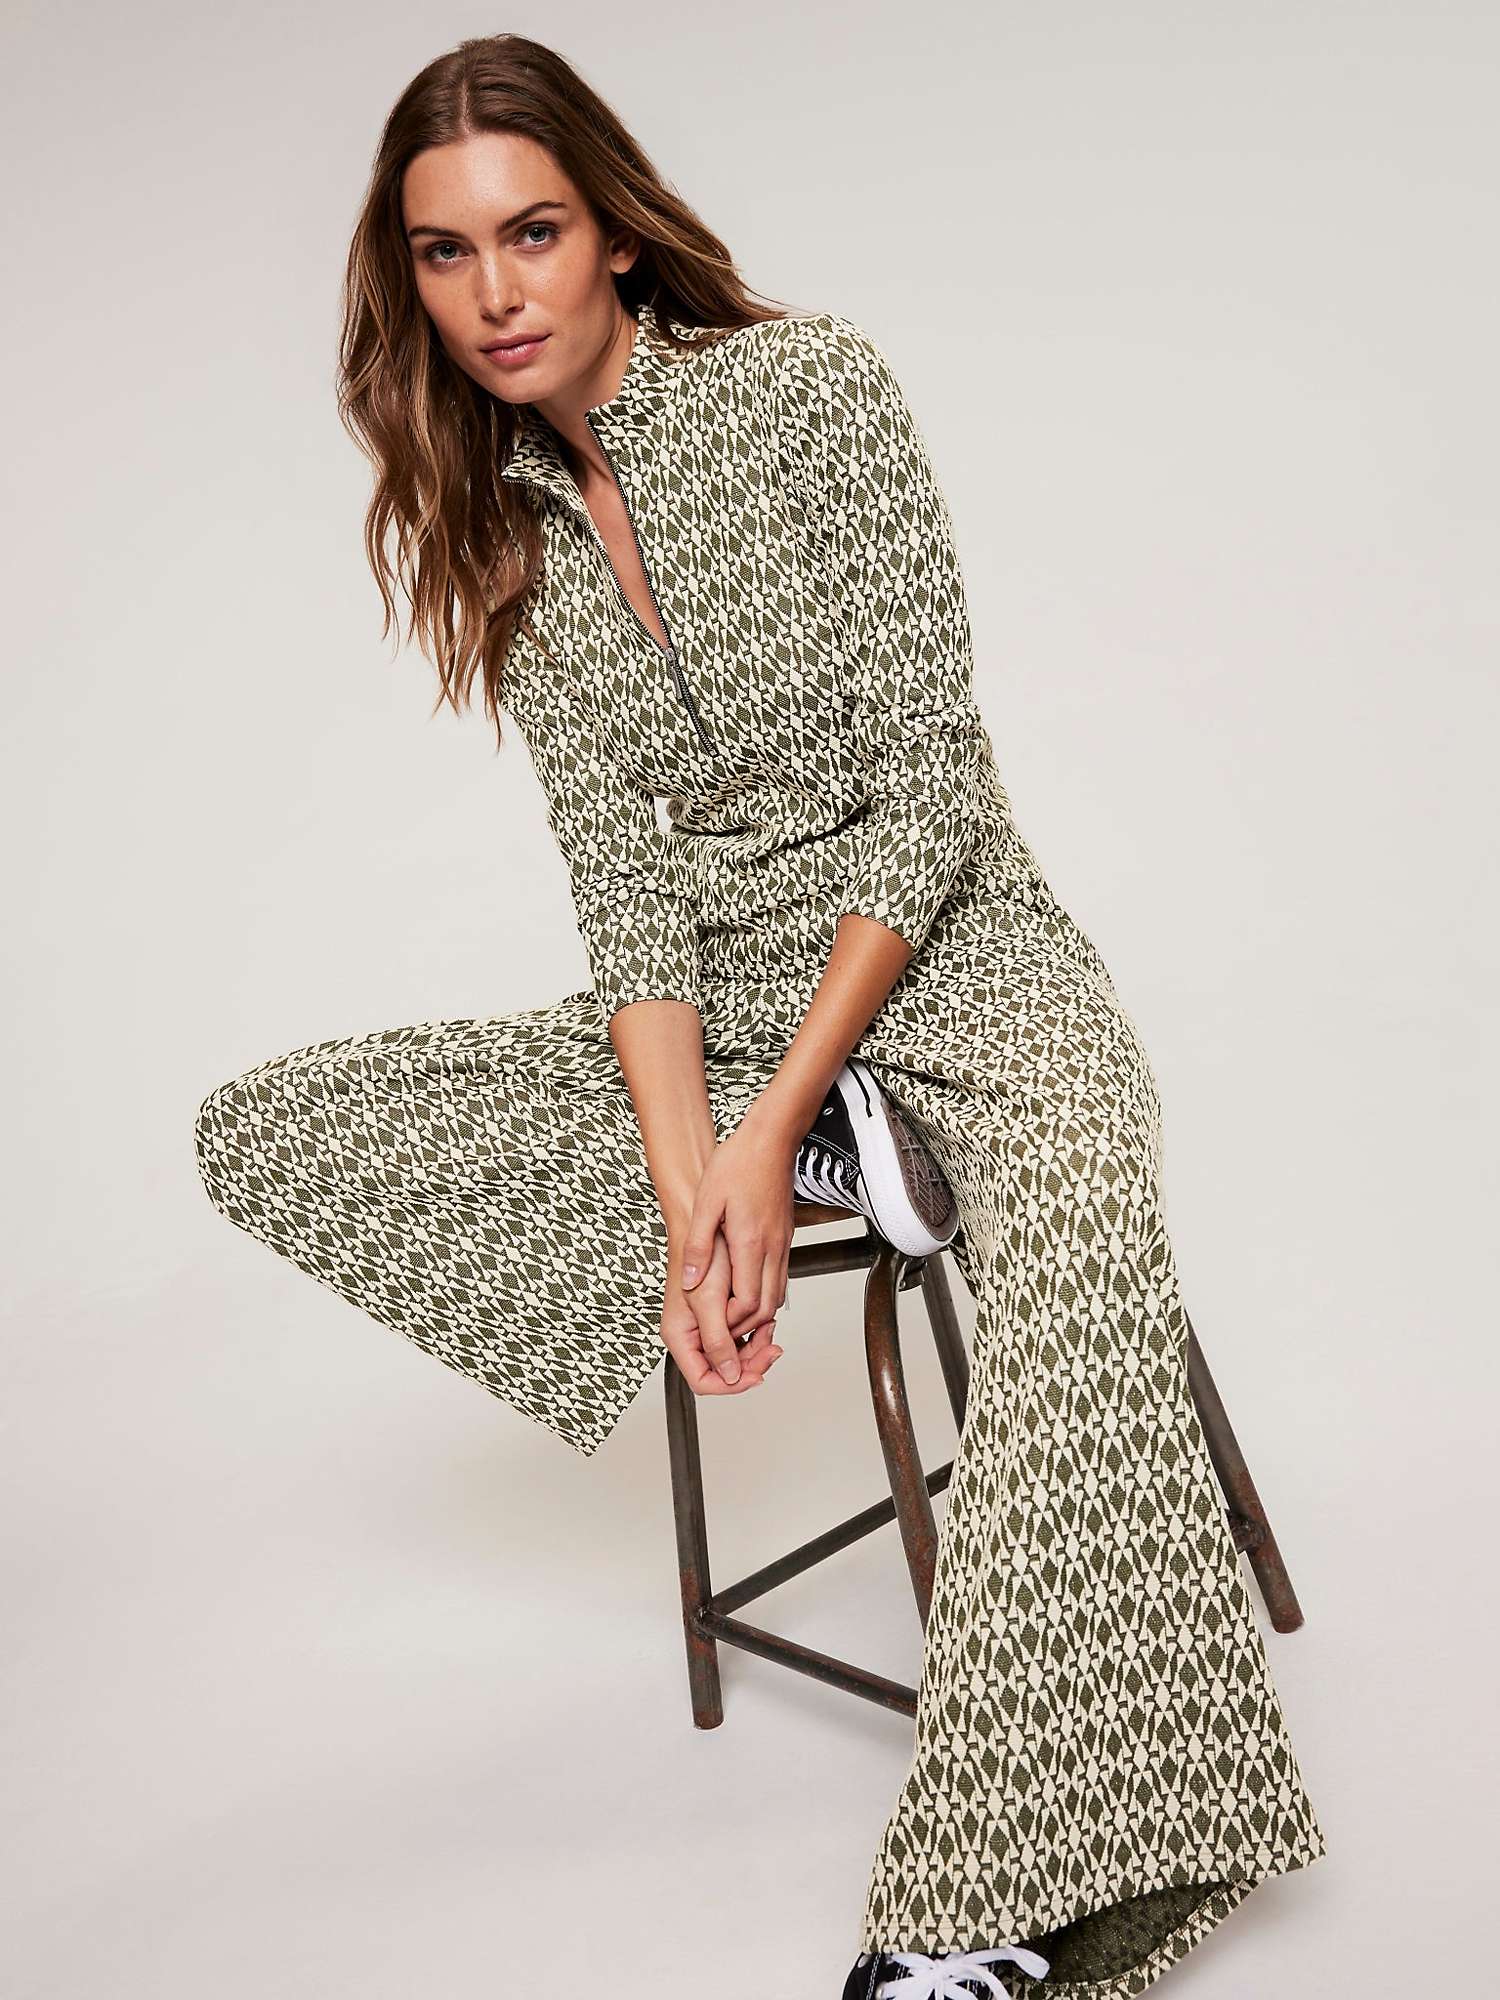 Buy Mint Velvet Jacquard Zip Trousers, Green Multi Online at johnlewis.com